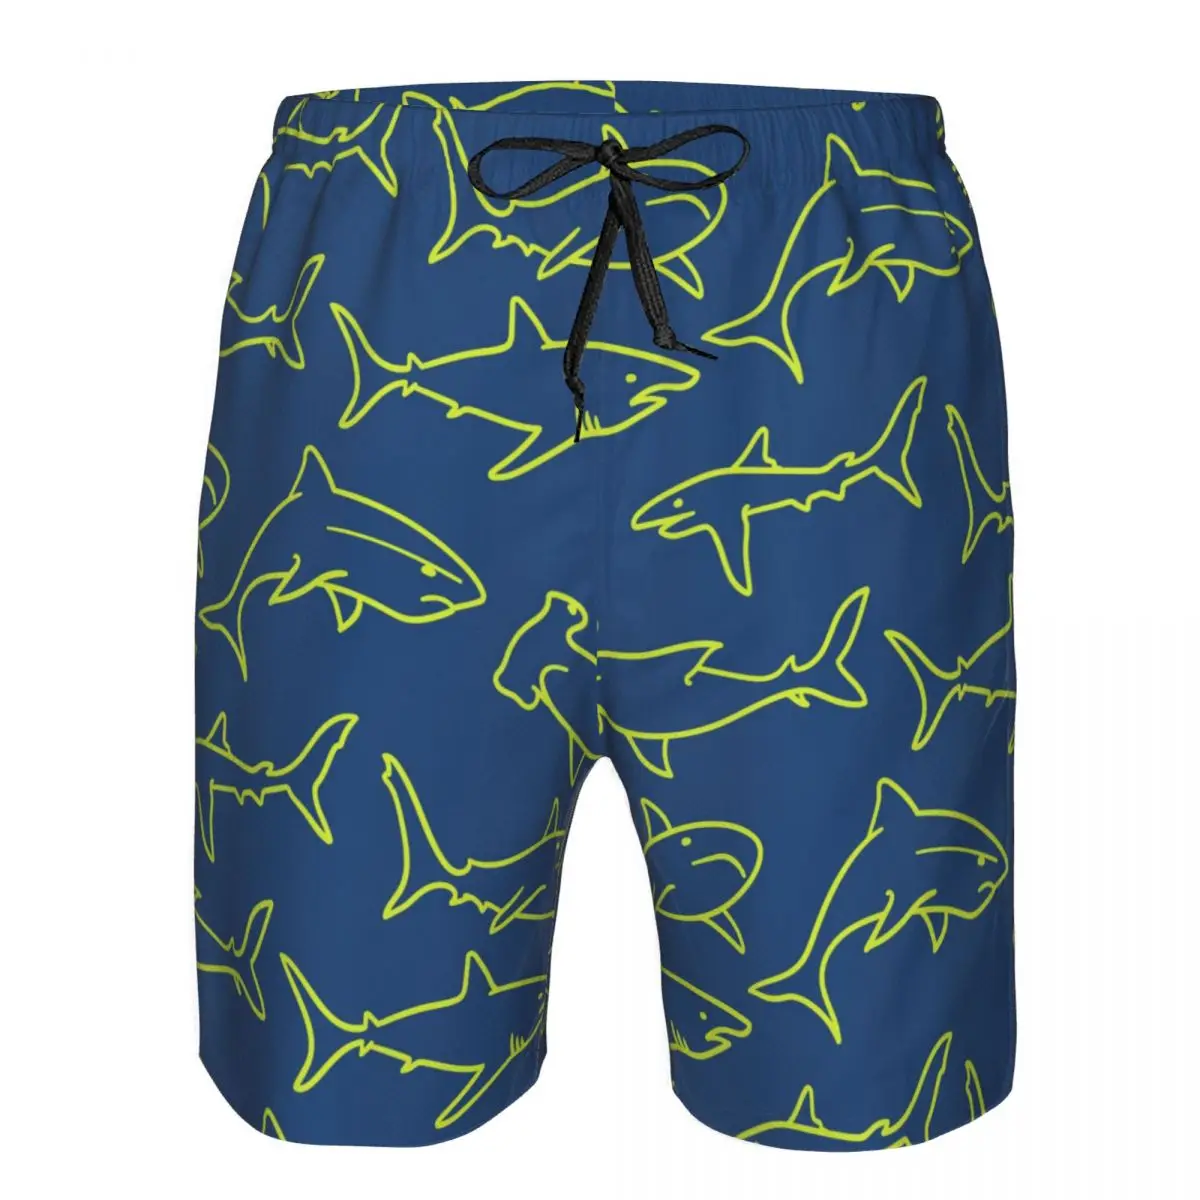 

Мужские плавательные шорты, одежда для плавания, мужские плавки с принтом морских акул, купальник, пляжная одежда, бордшорты